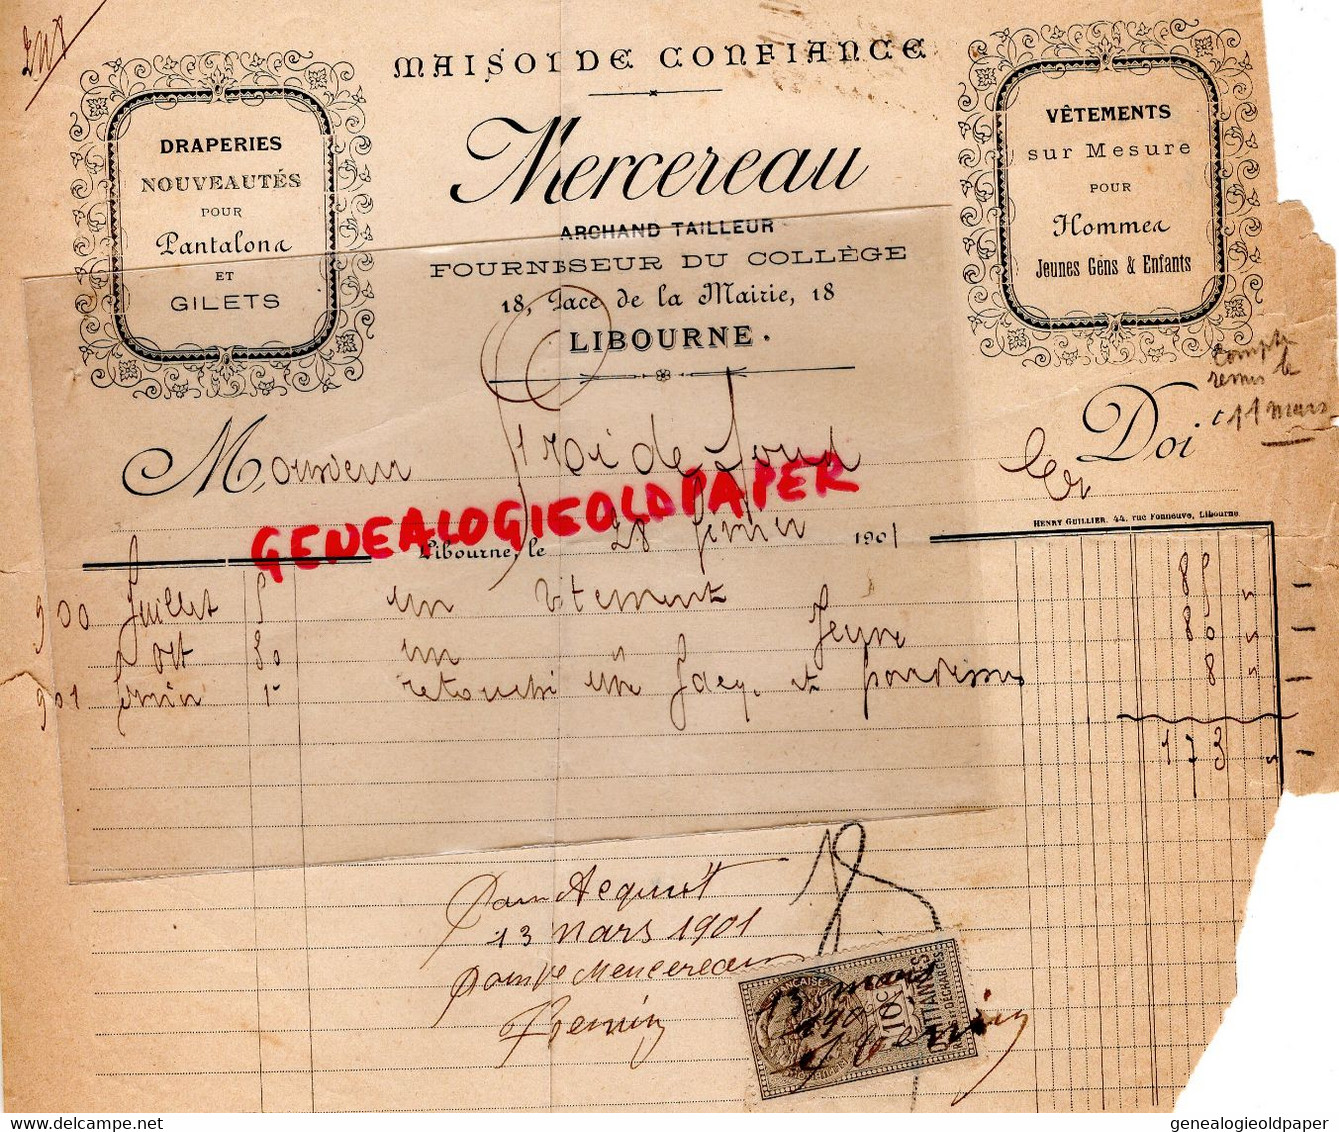 33- LIBOURNE- FACTURE MERCEREAU - MARCHAND TAILLEUR -FOURNISSEUR DU COLLEGE ECOLE- 18 PLACE MAIRIE- 1901 - Textile & Clothing